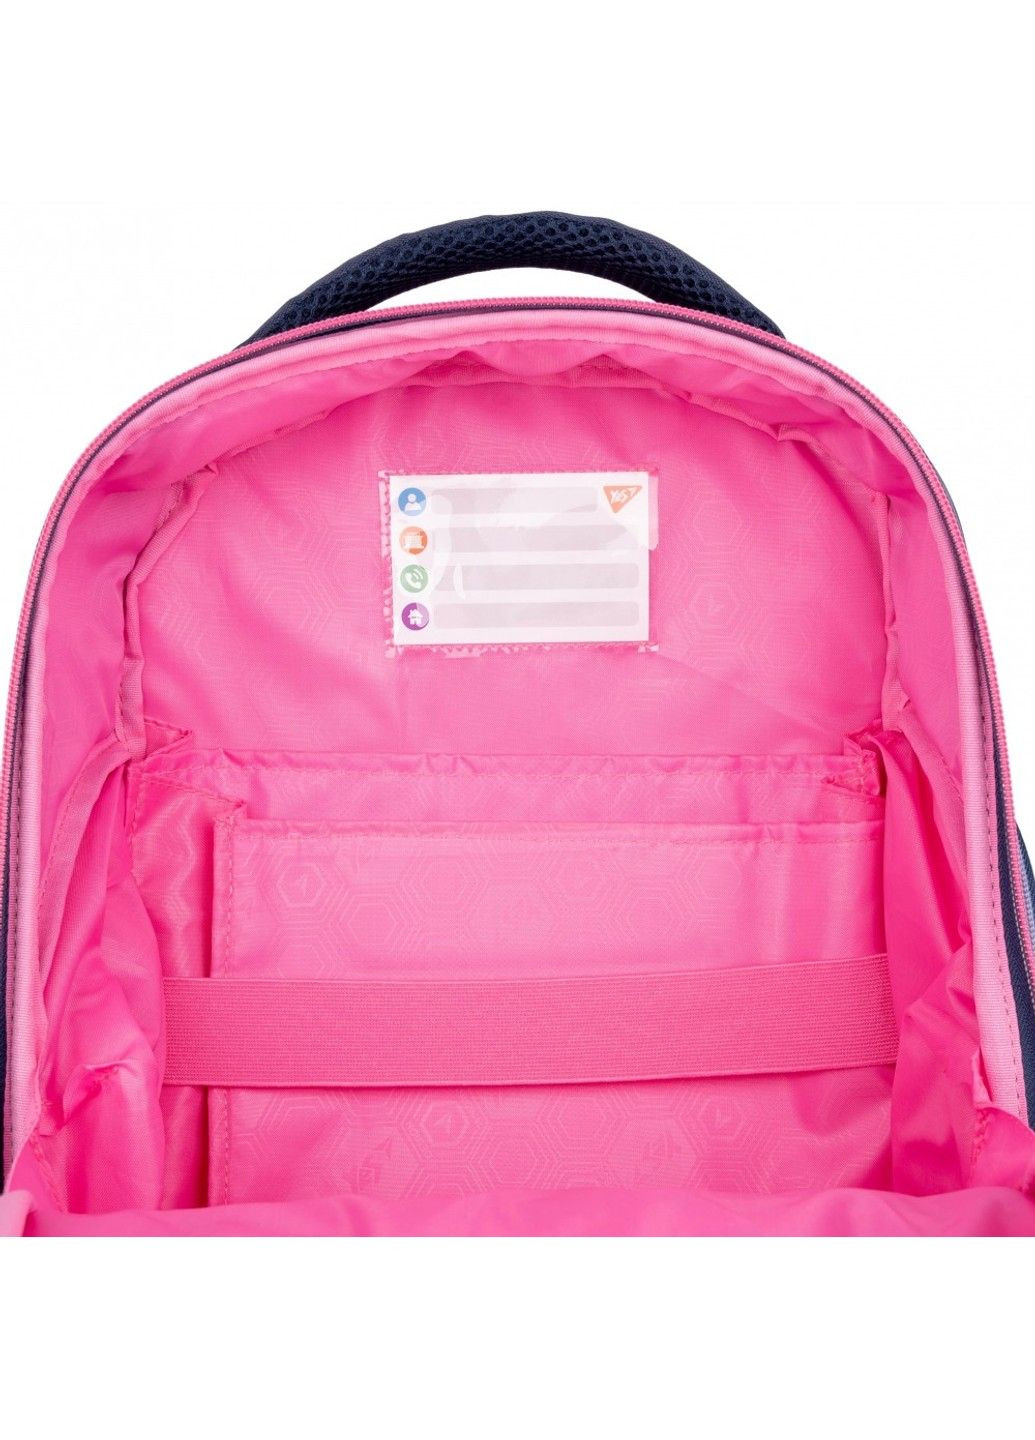 Рюкзак школьный для младших классов S-84 Hi koala! Yes (278404522)